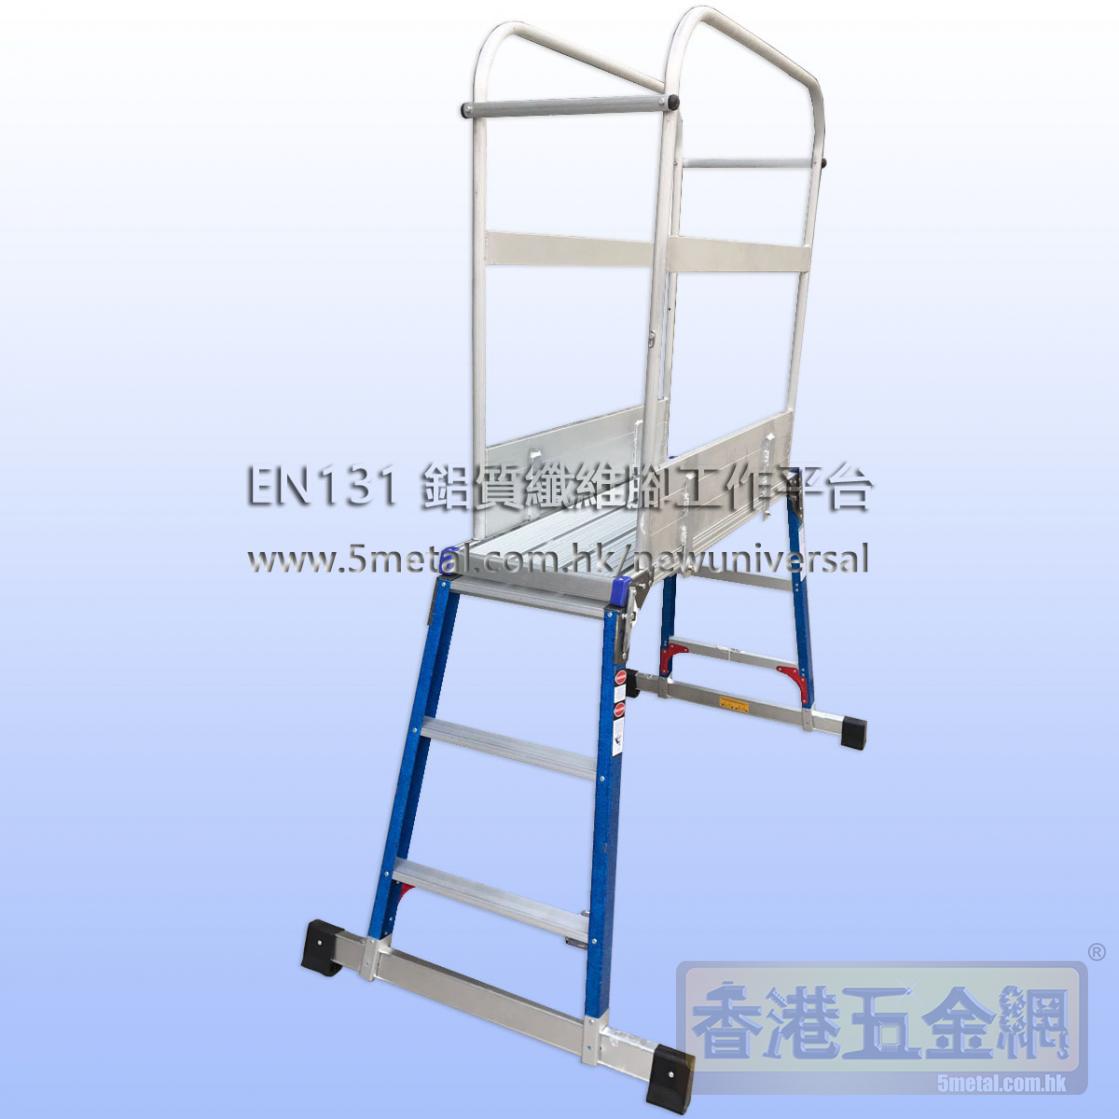 訂做/製/造MAPLE楓葉牌 EN131證書 鋁質摺疊式工作平台梯(纖維腳、可加圍攔)